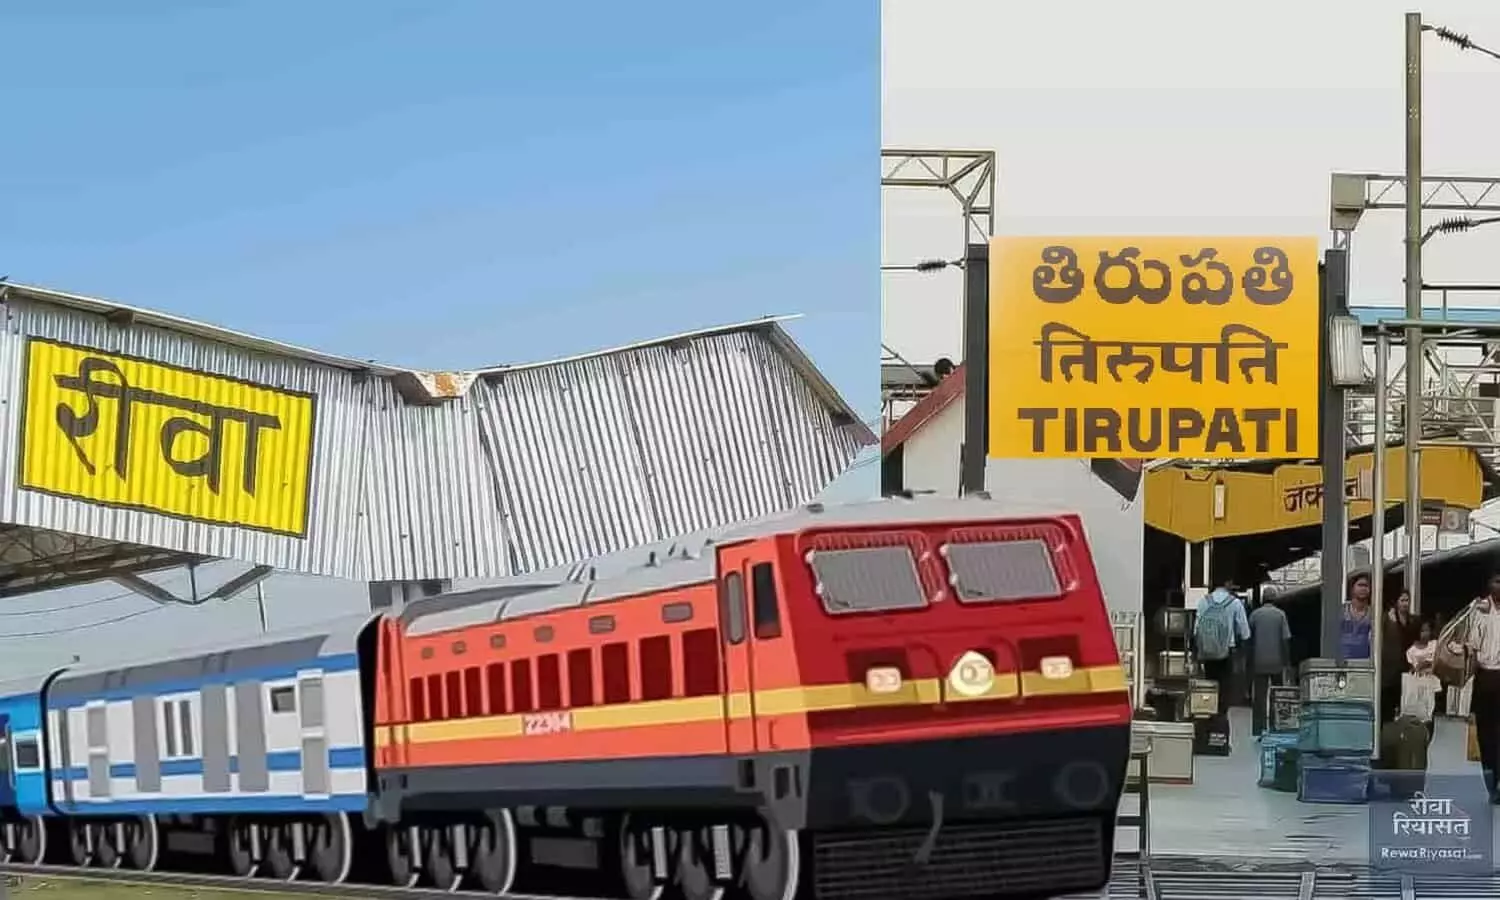 मुख्यमंत्री तीर्थ दर्शन योजनाः रीवा से विशेष ट्रेन 17 सितम्बर को जाएगी तिरूपति